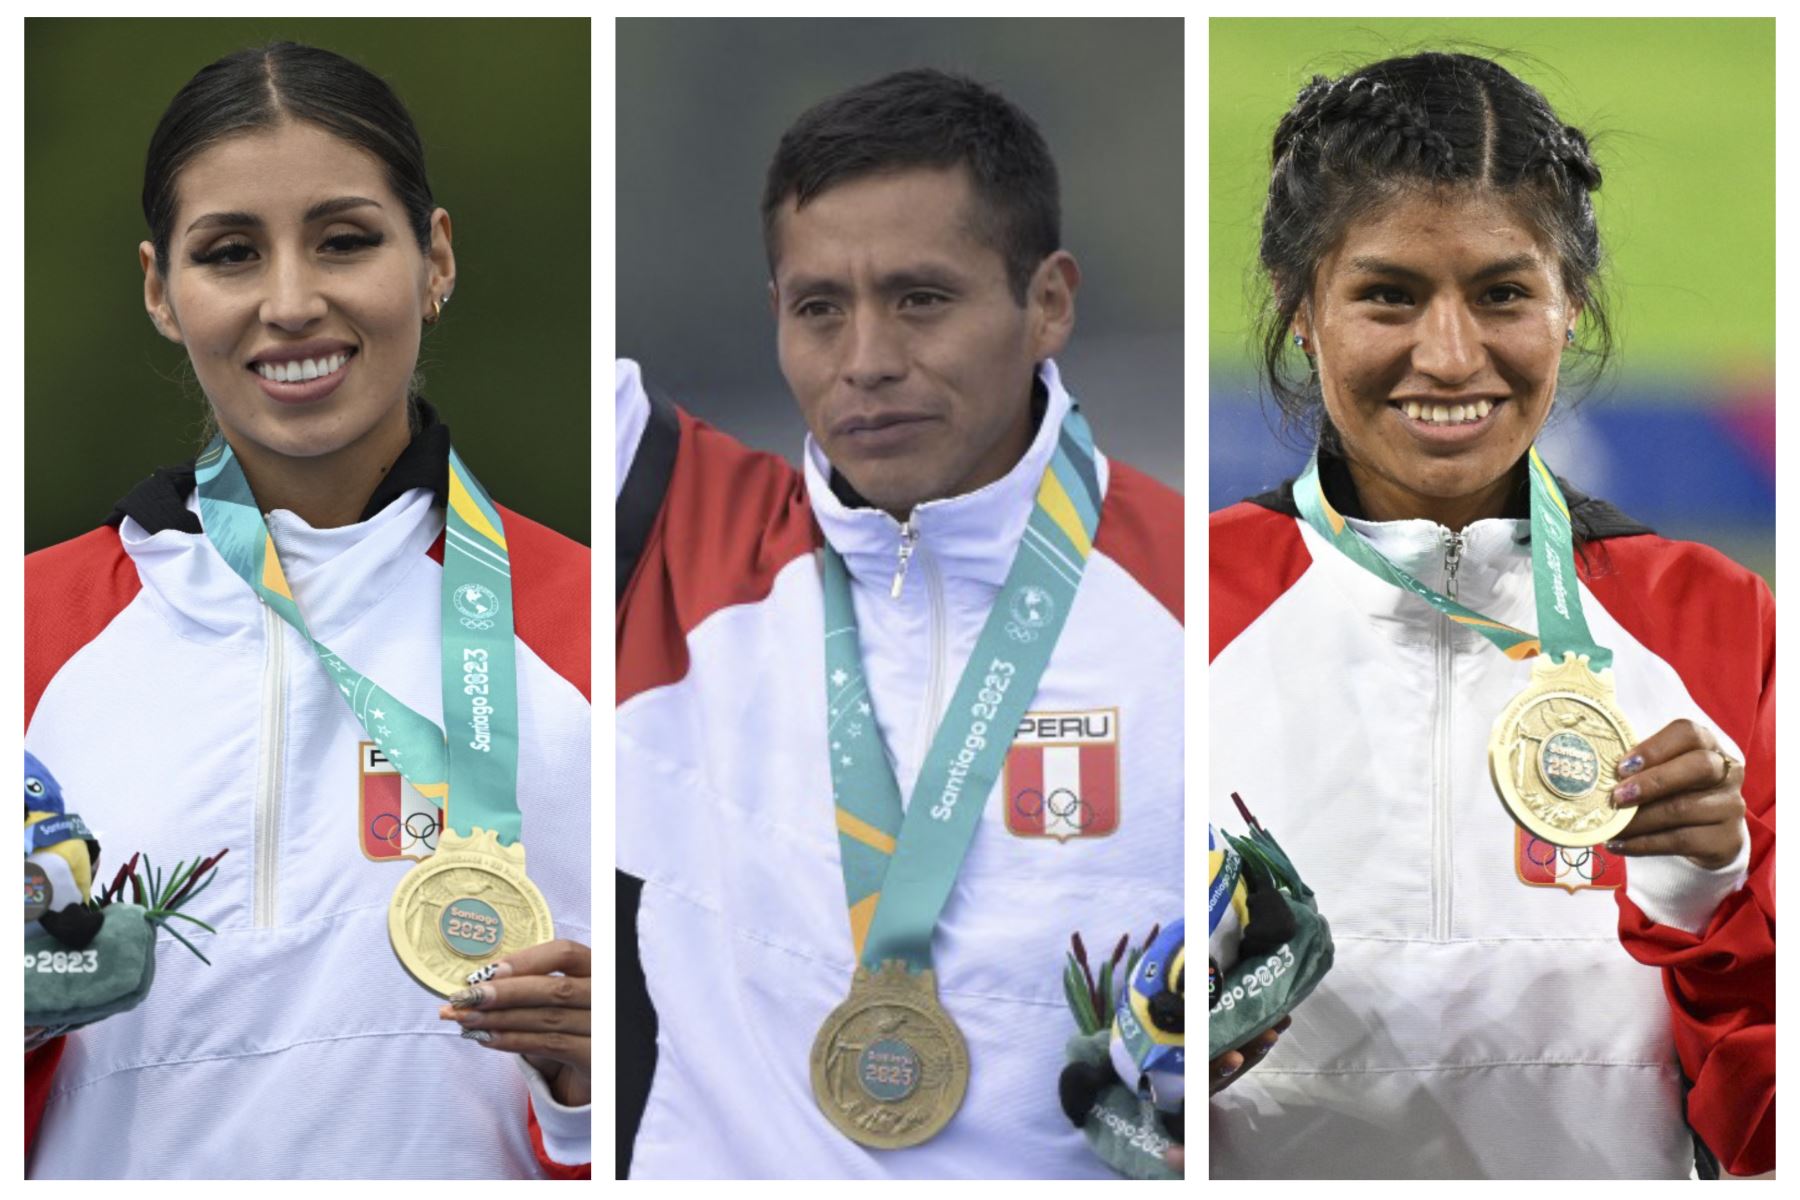 Kimberly García, Cristhian Pacheco y Luz Mery Rojas son atletas de Huancayo, capital de la región Junín, y han ganado medallas de oro para el Perú en los Panamericanos 2023. Imagen: Ilustración